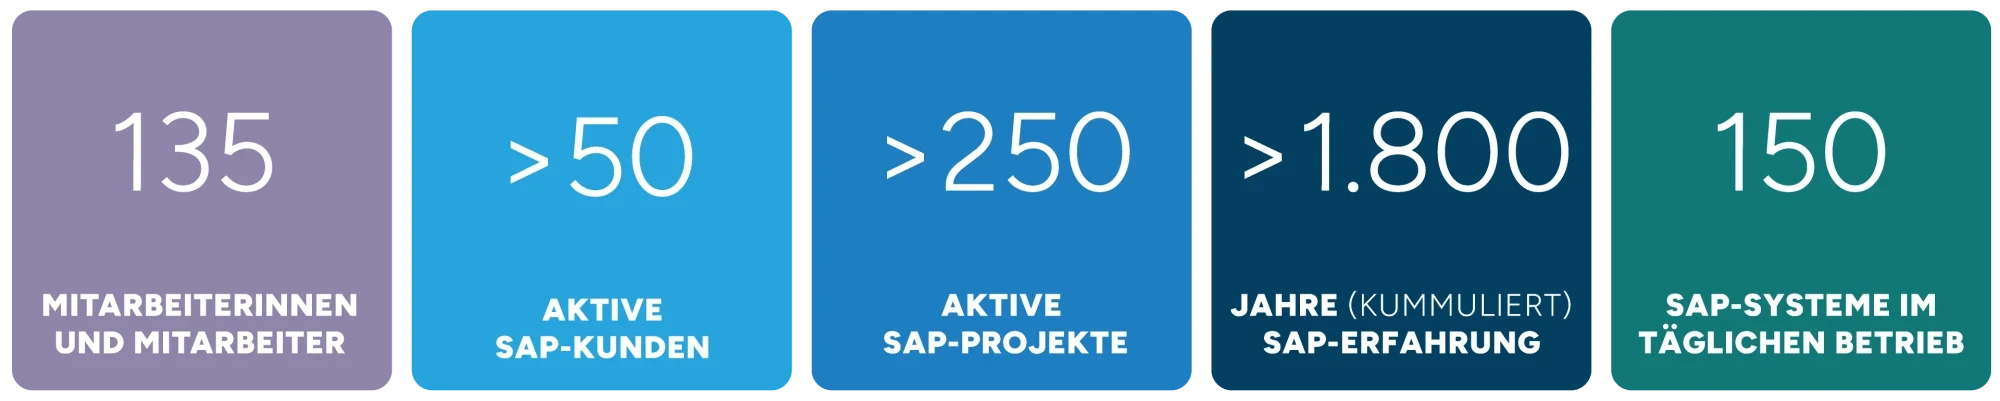 Foto zeigt einen Überblick über das SAP-Umfeld bei SPIRIT/21: 135 engagierte Mitarbeiterinnen und Mitarbeiter, über 50 zufriedene SAP-Kunden, mehr als 250 laufende SAP-Projekte, eine beeindruckende Gesamterfahrung von über 1800 Jahren im SAP-Bereich und die Verwaltung von 150 aktiven SAP-Systeme | SPIRIT/21